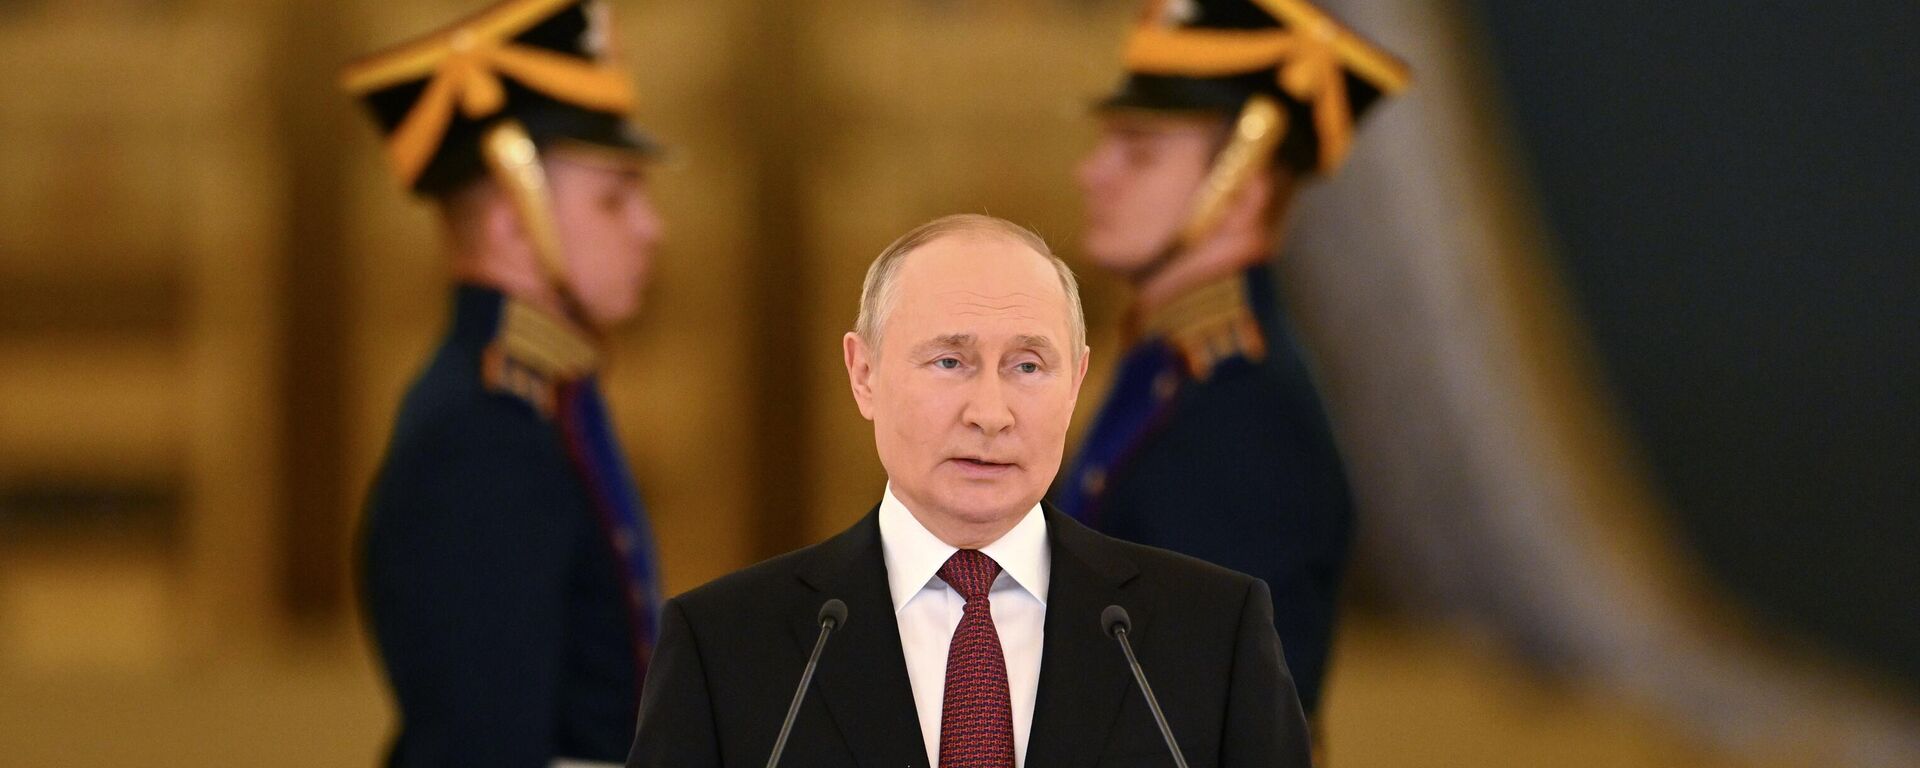 Rusiya prezidenti Vladimir Putin - Sputnik Azərbaycan, 1920, 21.09.2022